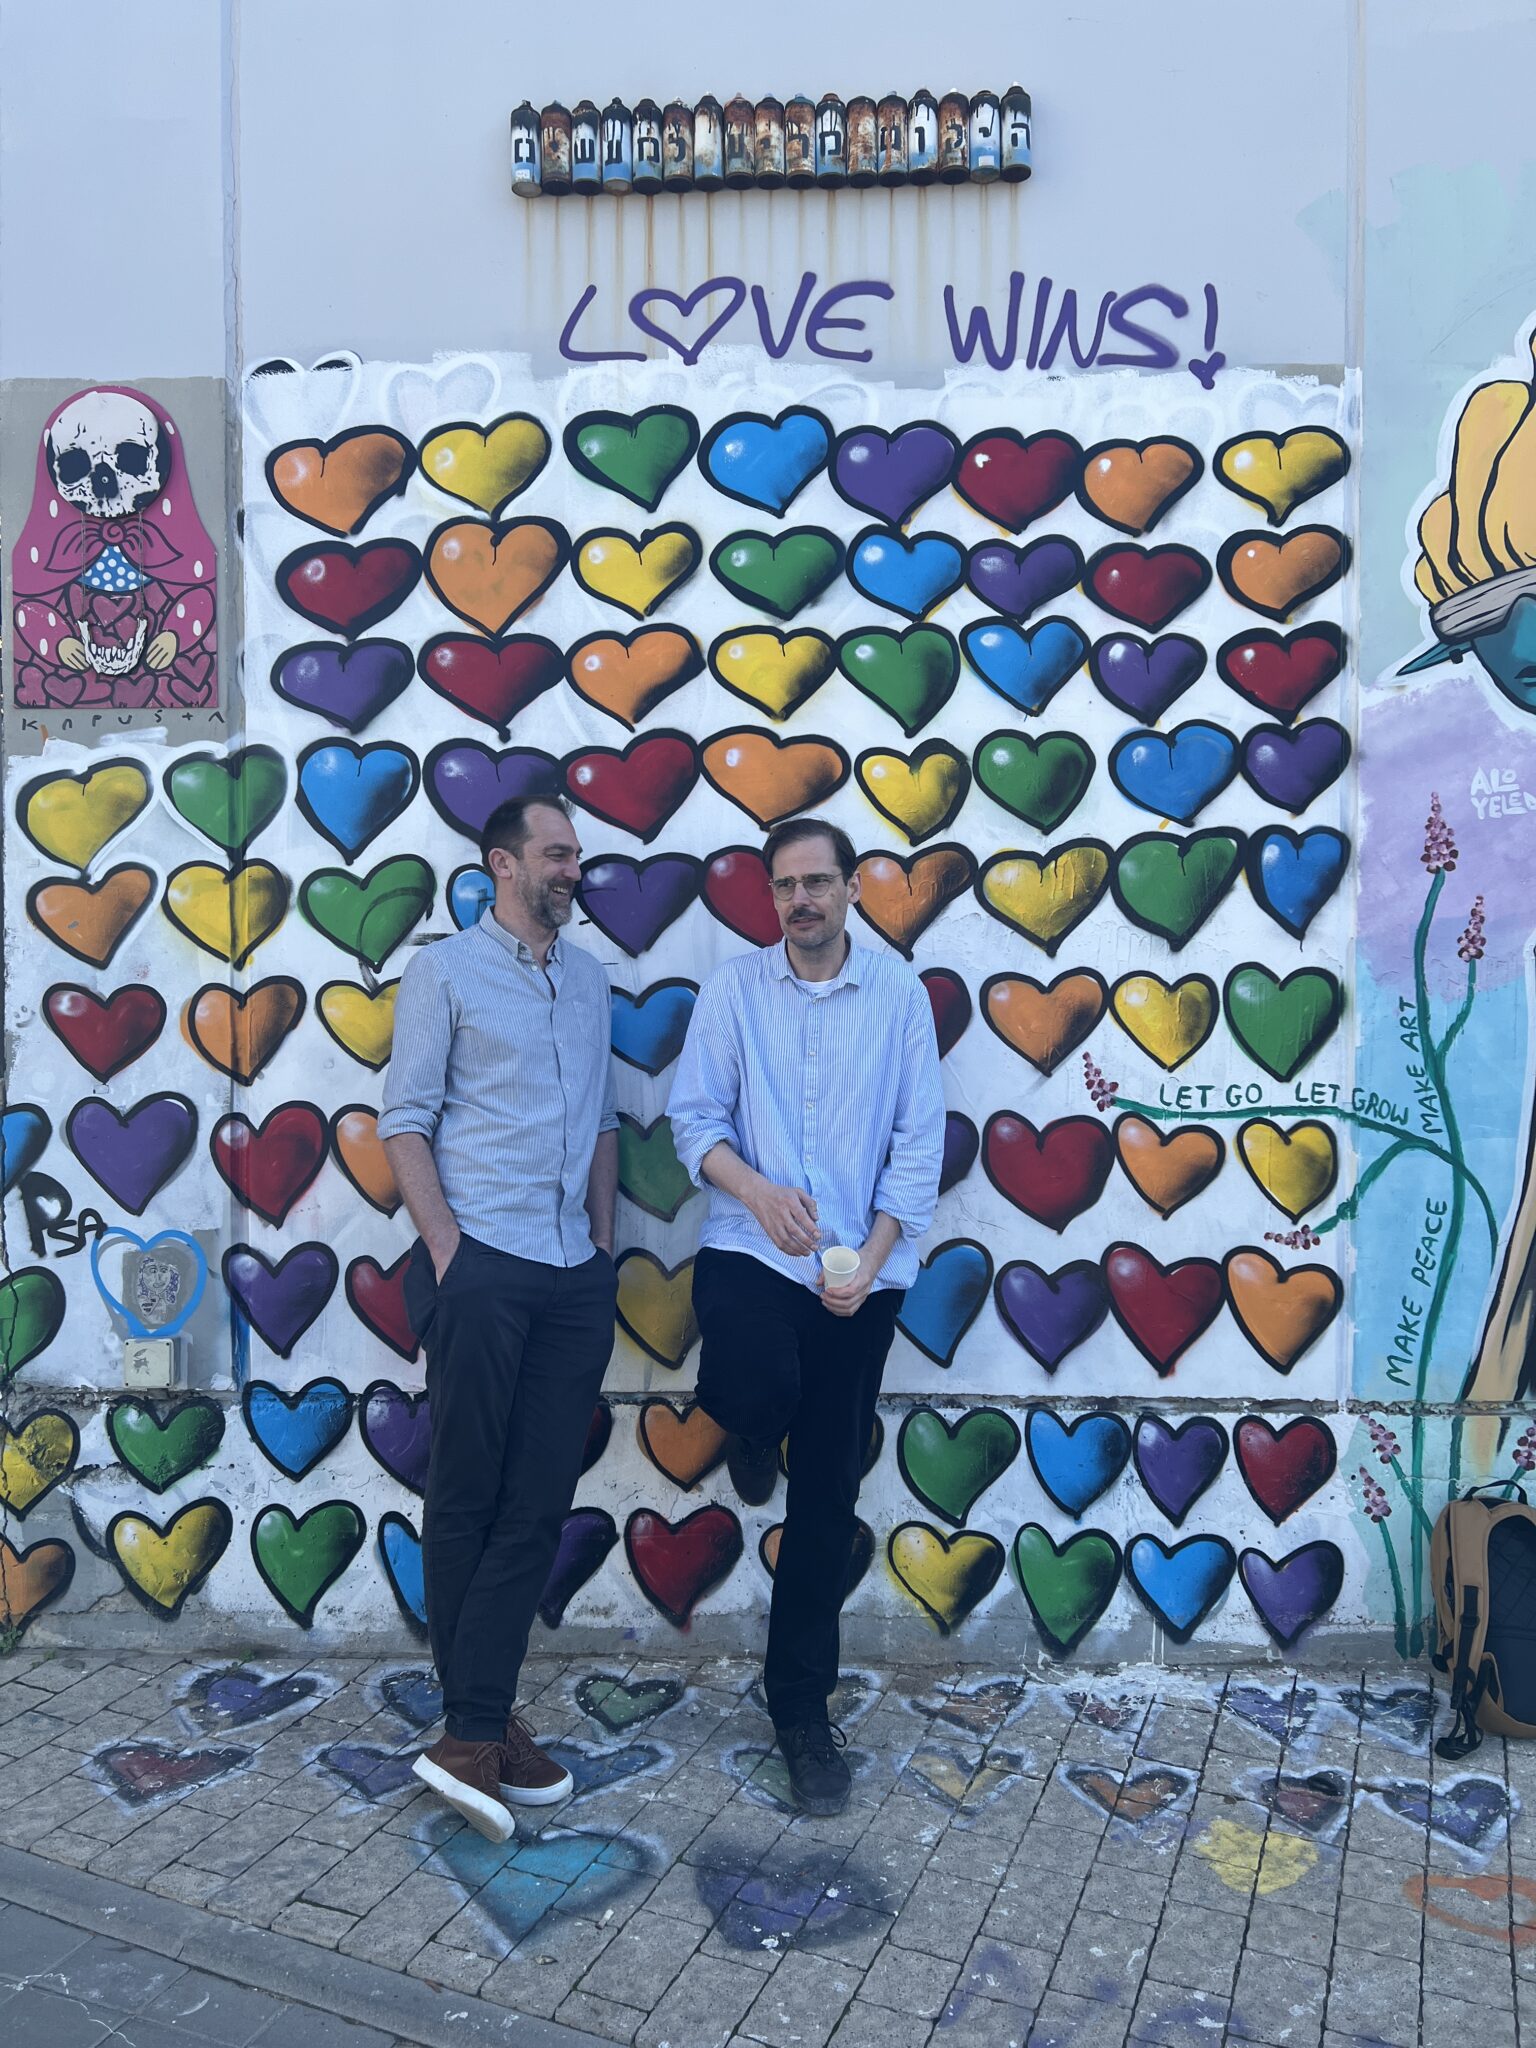 Street Art, viele bunte Herzen, „Love wins“, Michael und Jochen stehenm davor